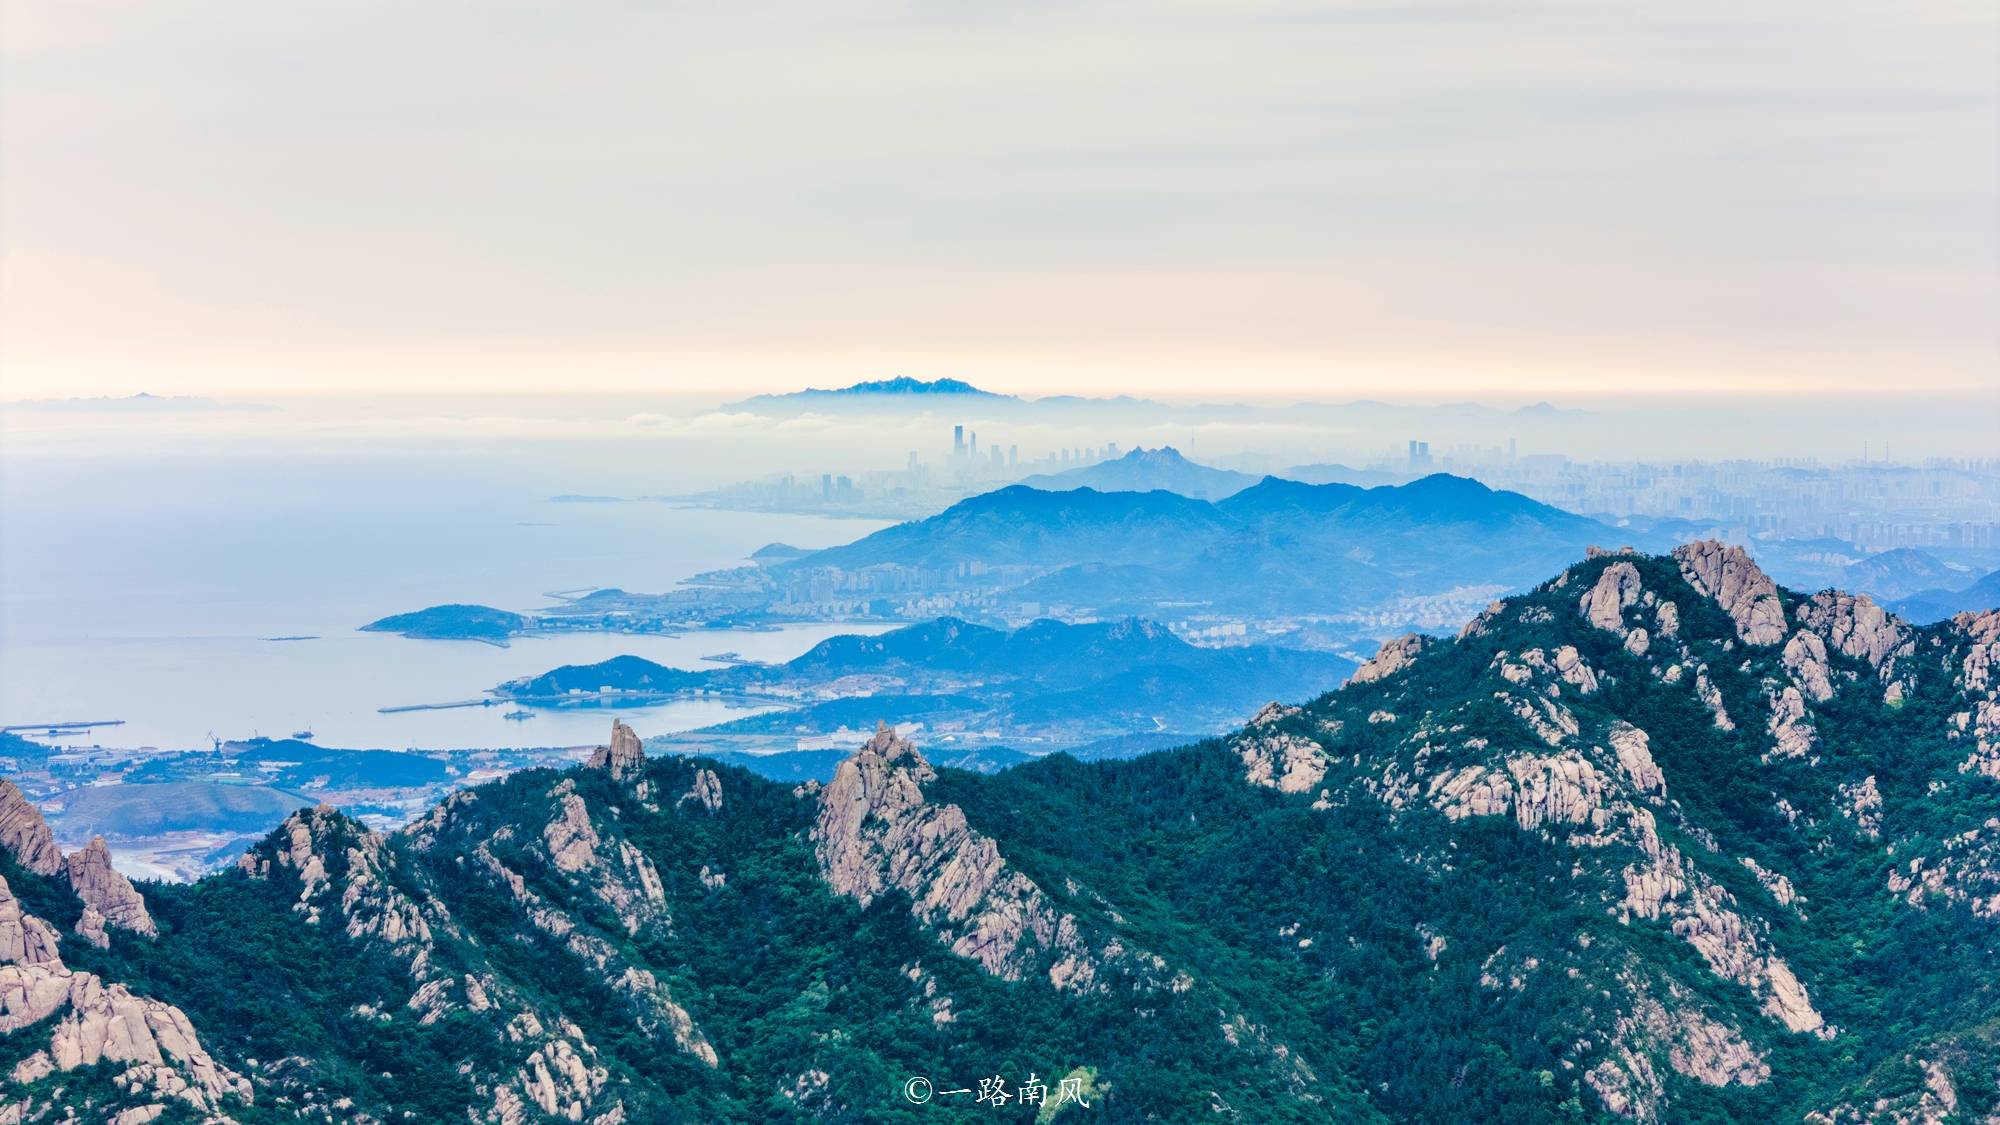 中国海岸线第一高峰，有“海上第一名山”之称，就在青岛崂山区